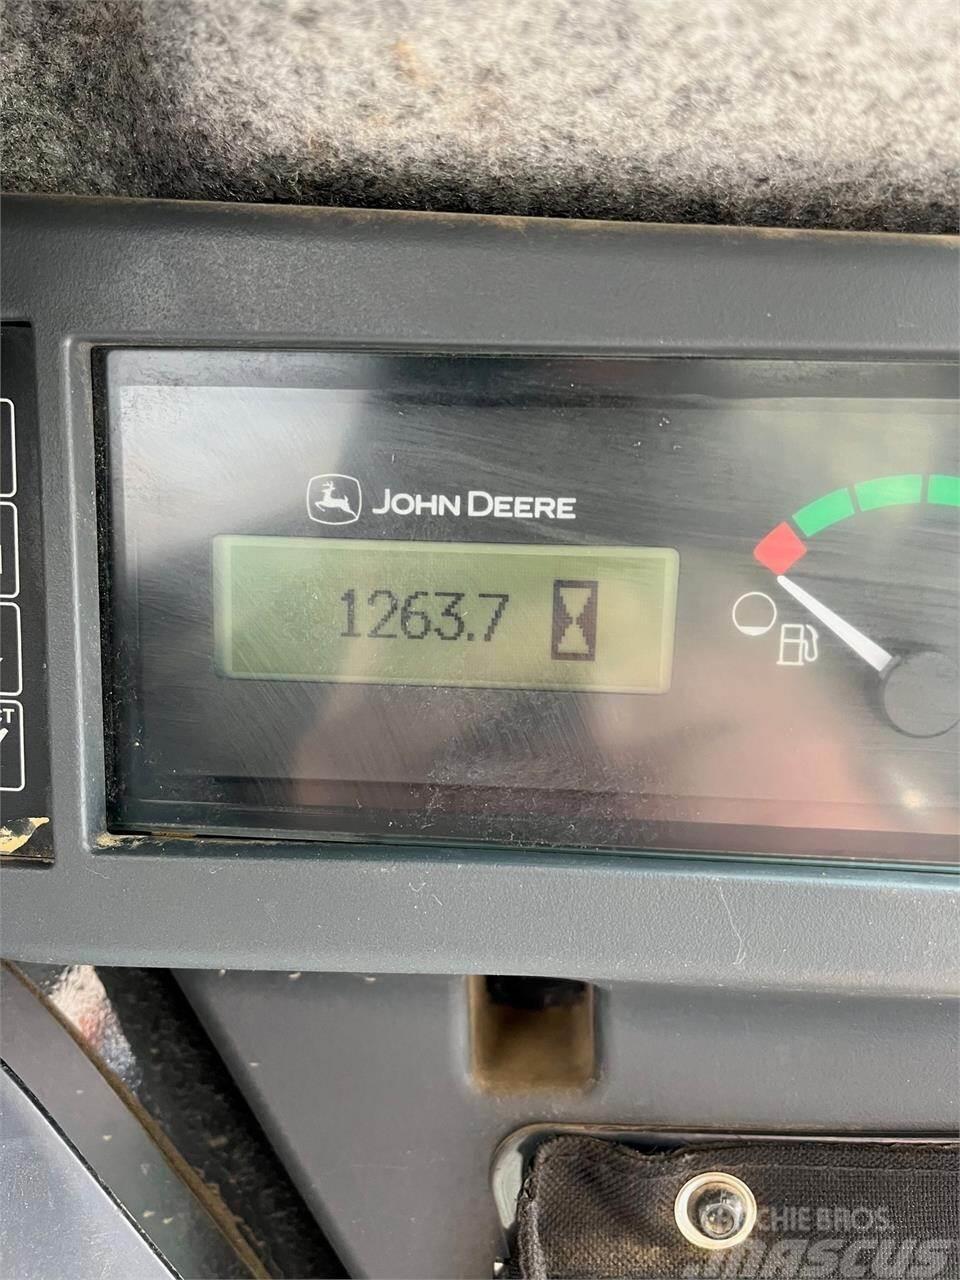 John Deere 333G Carregadoras de direcção deslizante